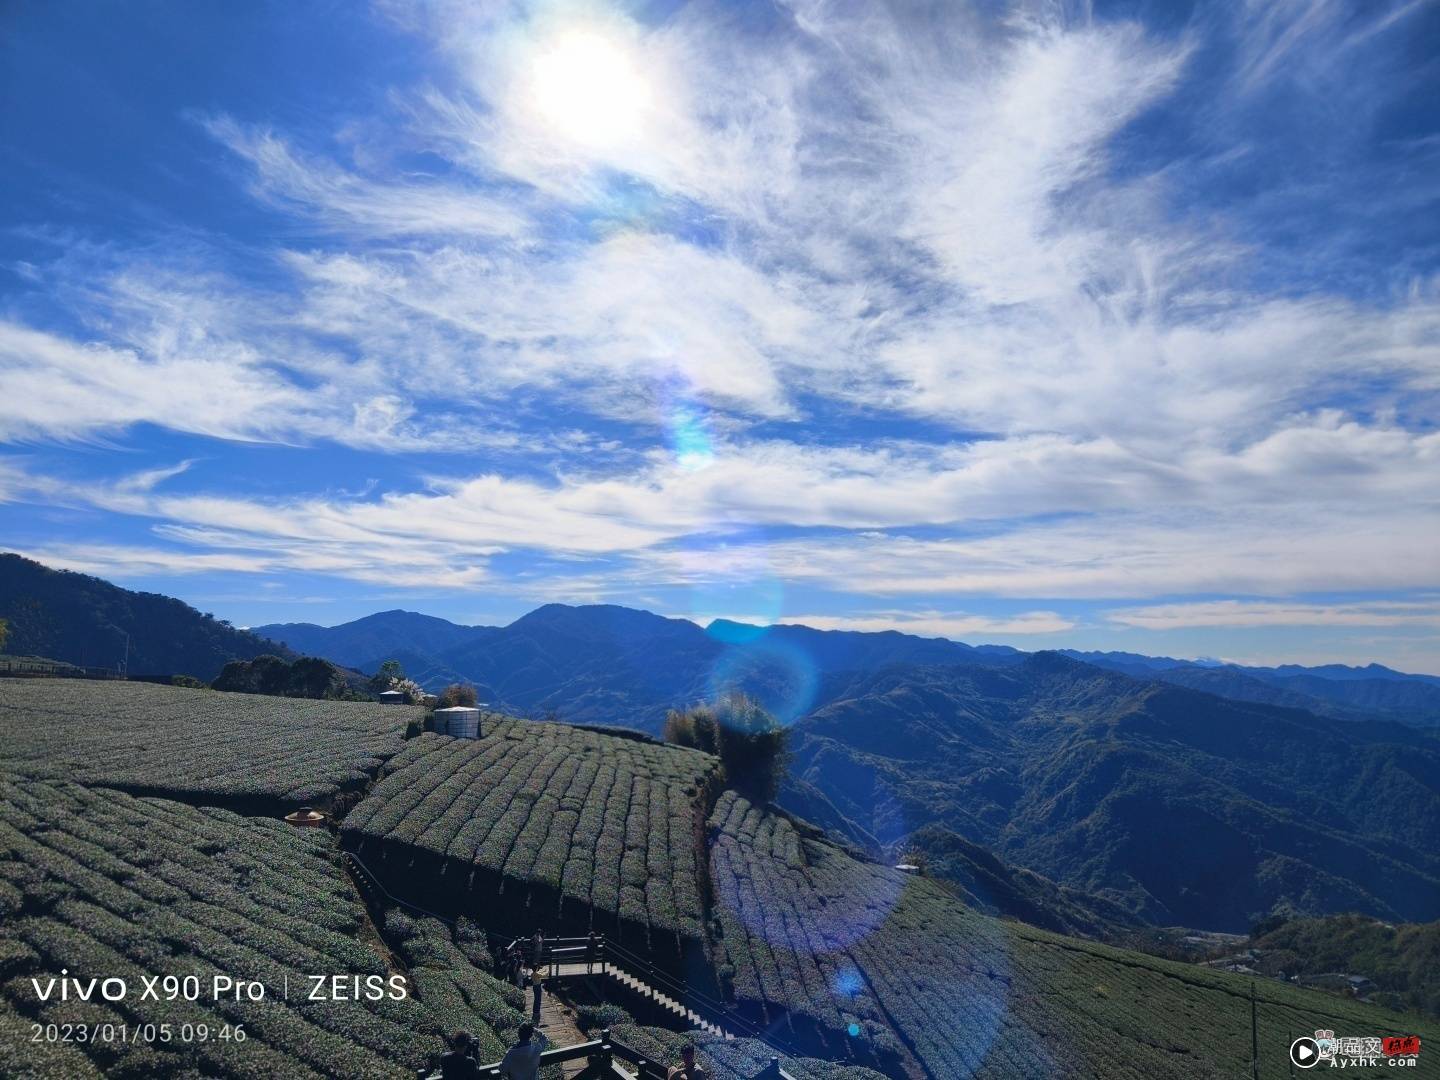 出门实拍｜vivo X90 Pro 登场！阿里山的星空云海美景全记录 数码科技 图25张